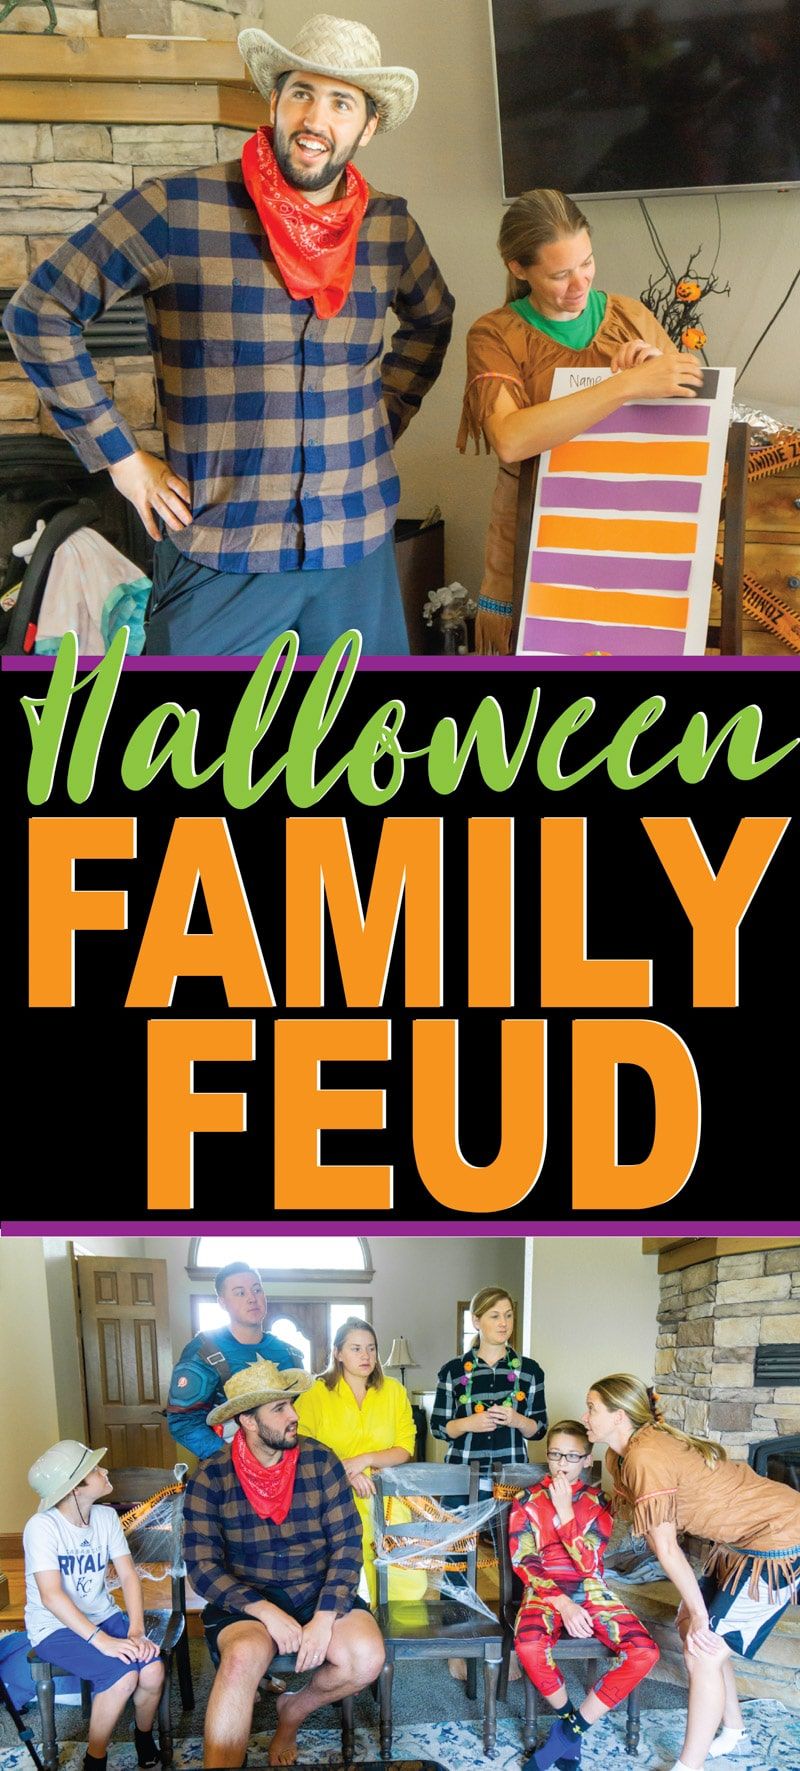 Bricolage Halloween en famille avec des questions amusantes pour les enfants et les adultes! Parfait pour une fête d